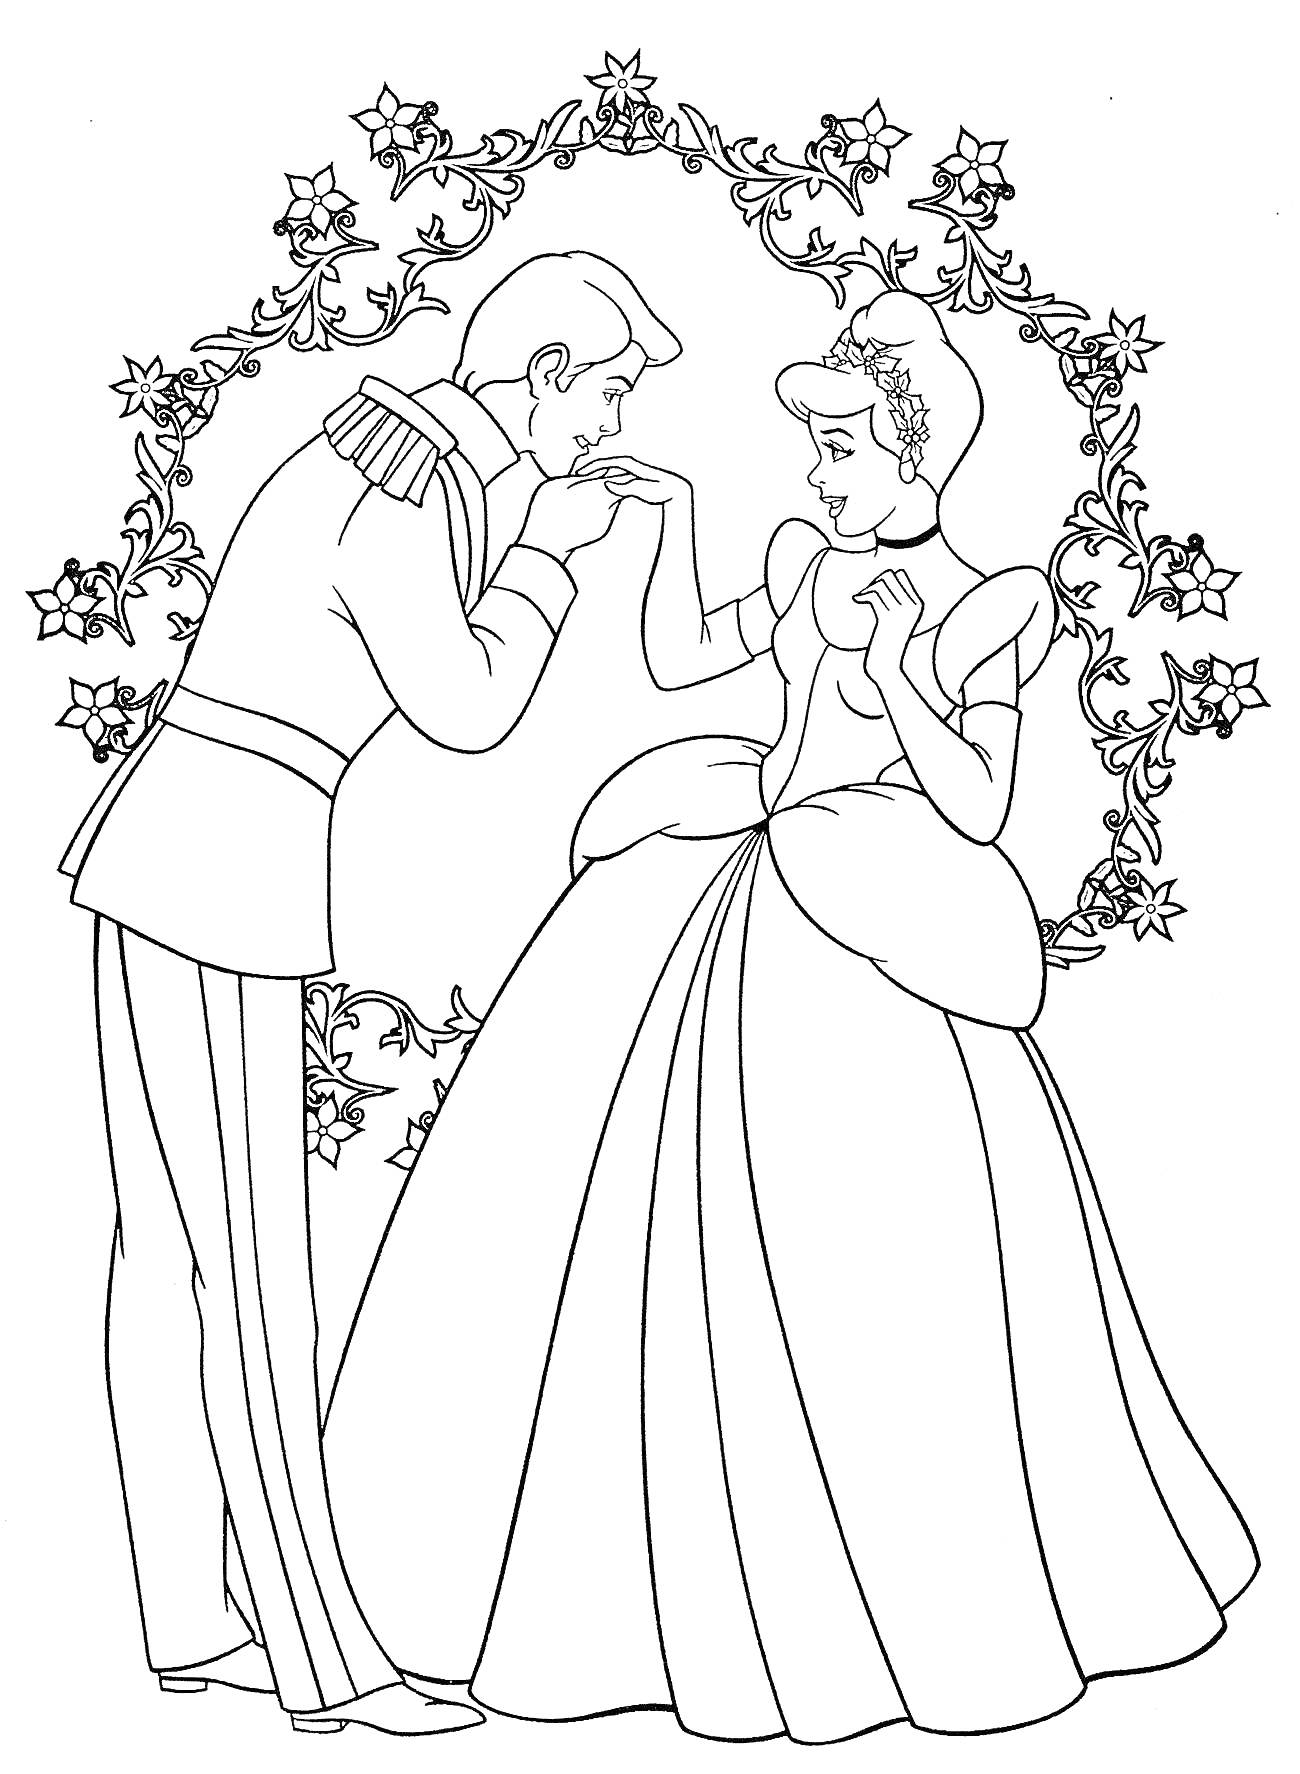 Принц целует руку Золушке перед цветочной аркой